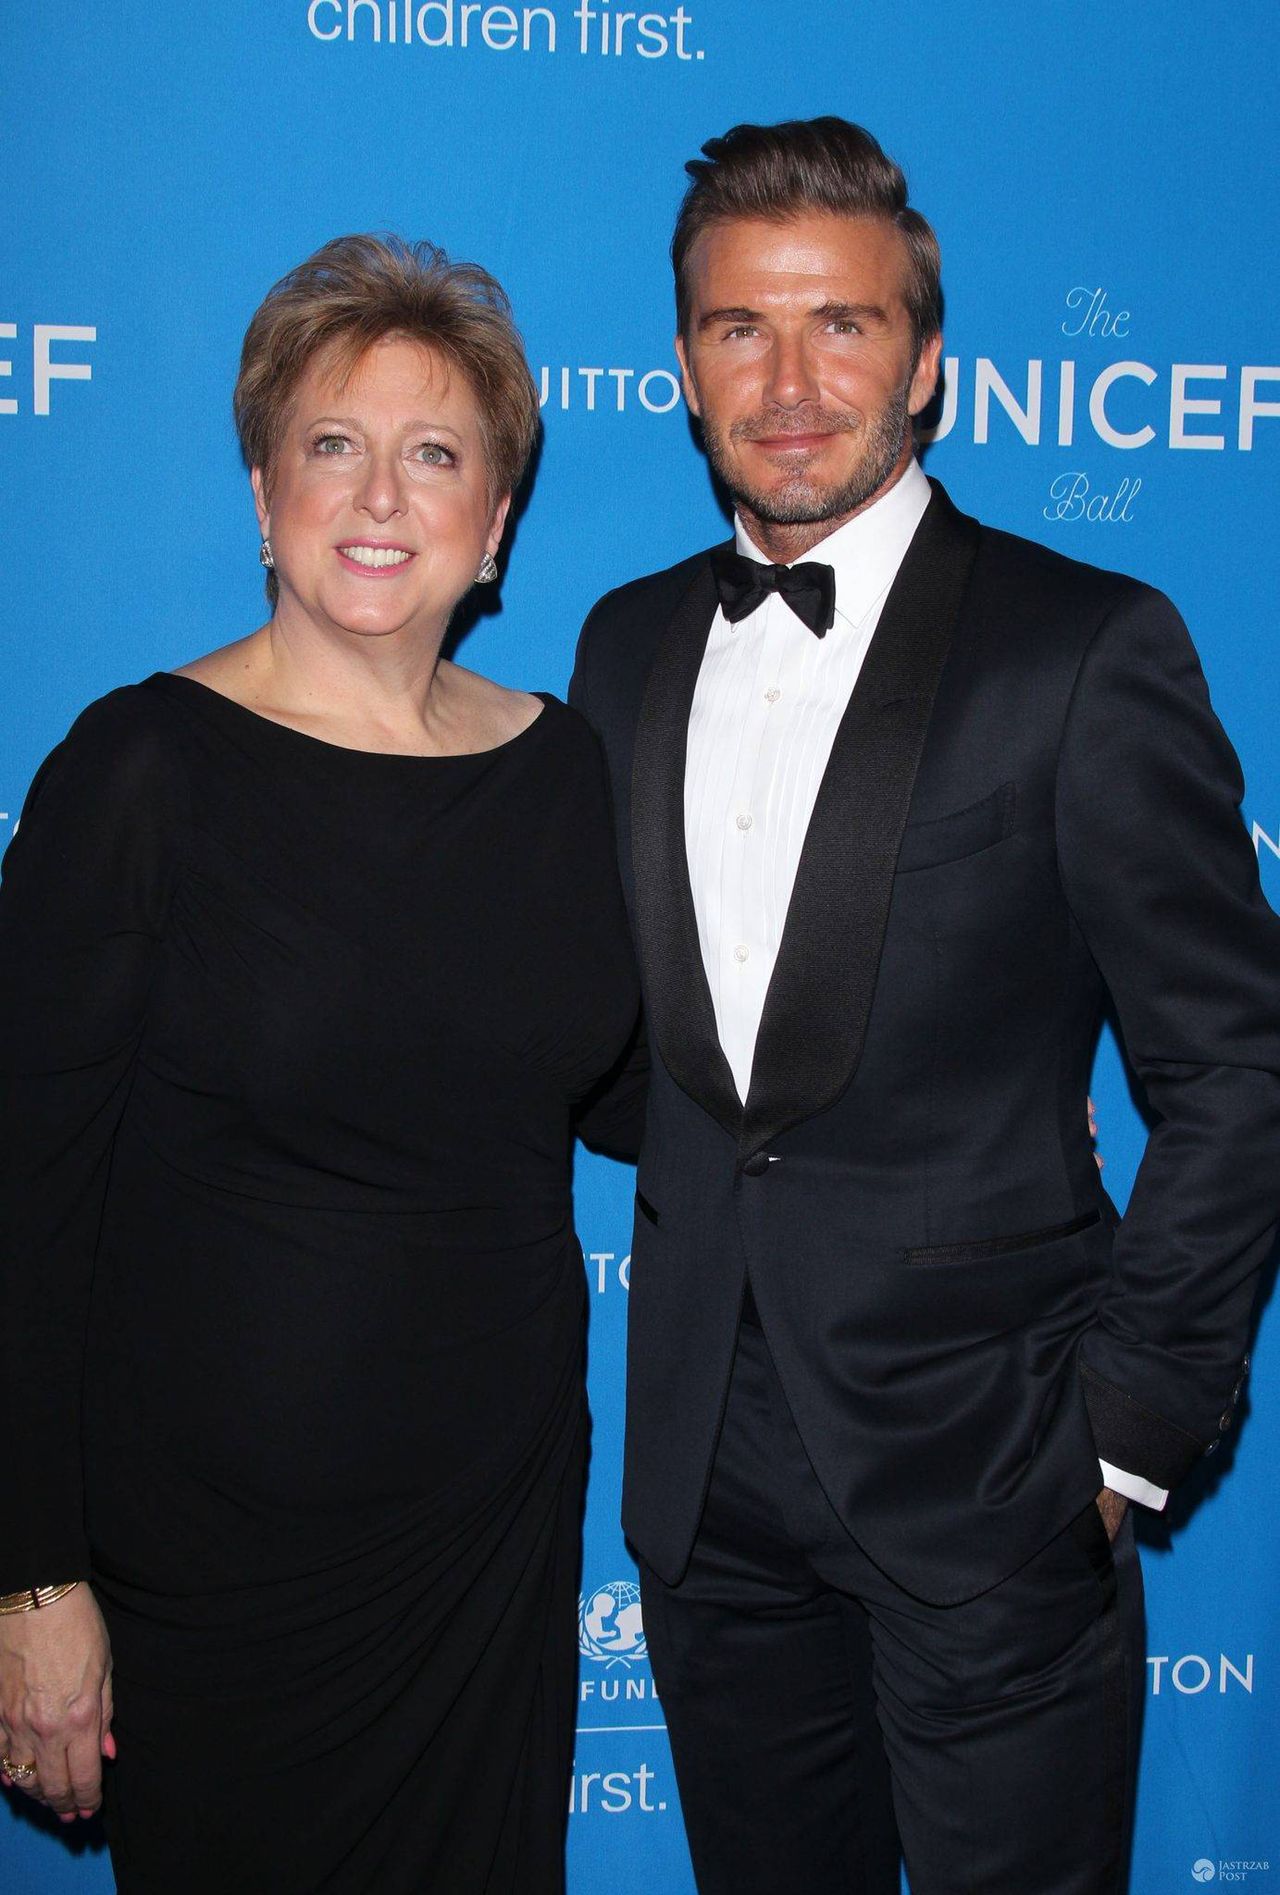 Caryl Stern (szefowa U.S. Fund for UNICEF, organizacji wspierającej UNICEF) i David Beckham, UNICEF Ball 2016 (fot. ONS)